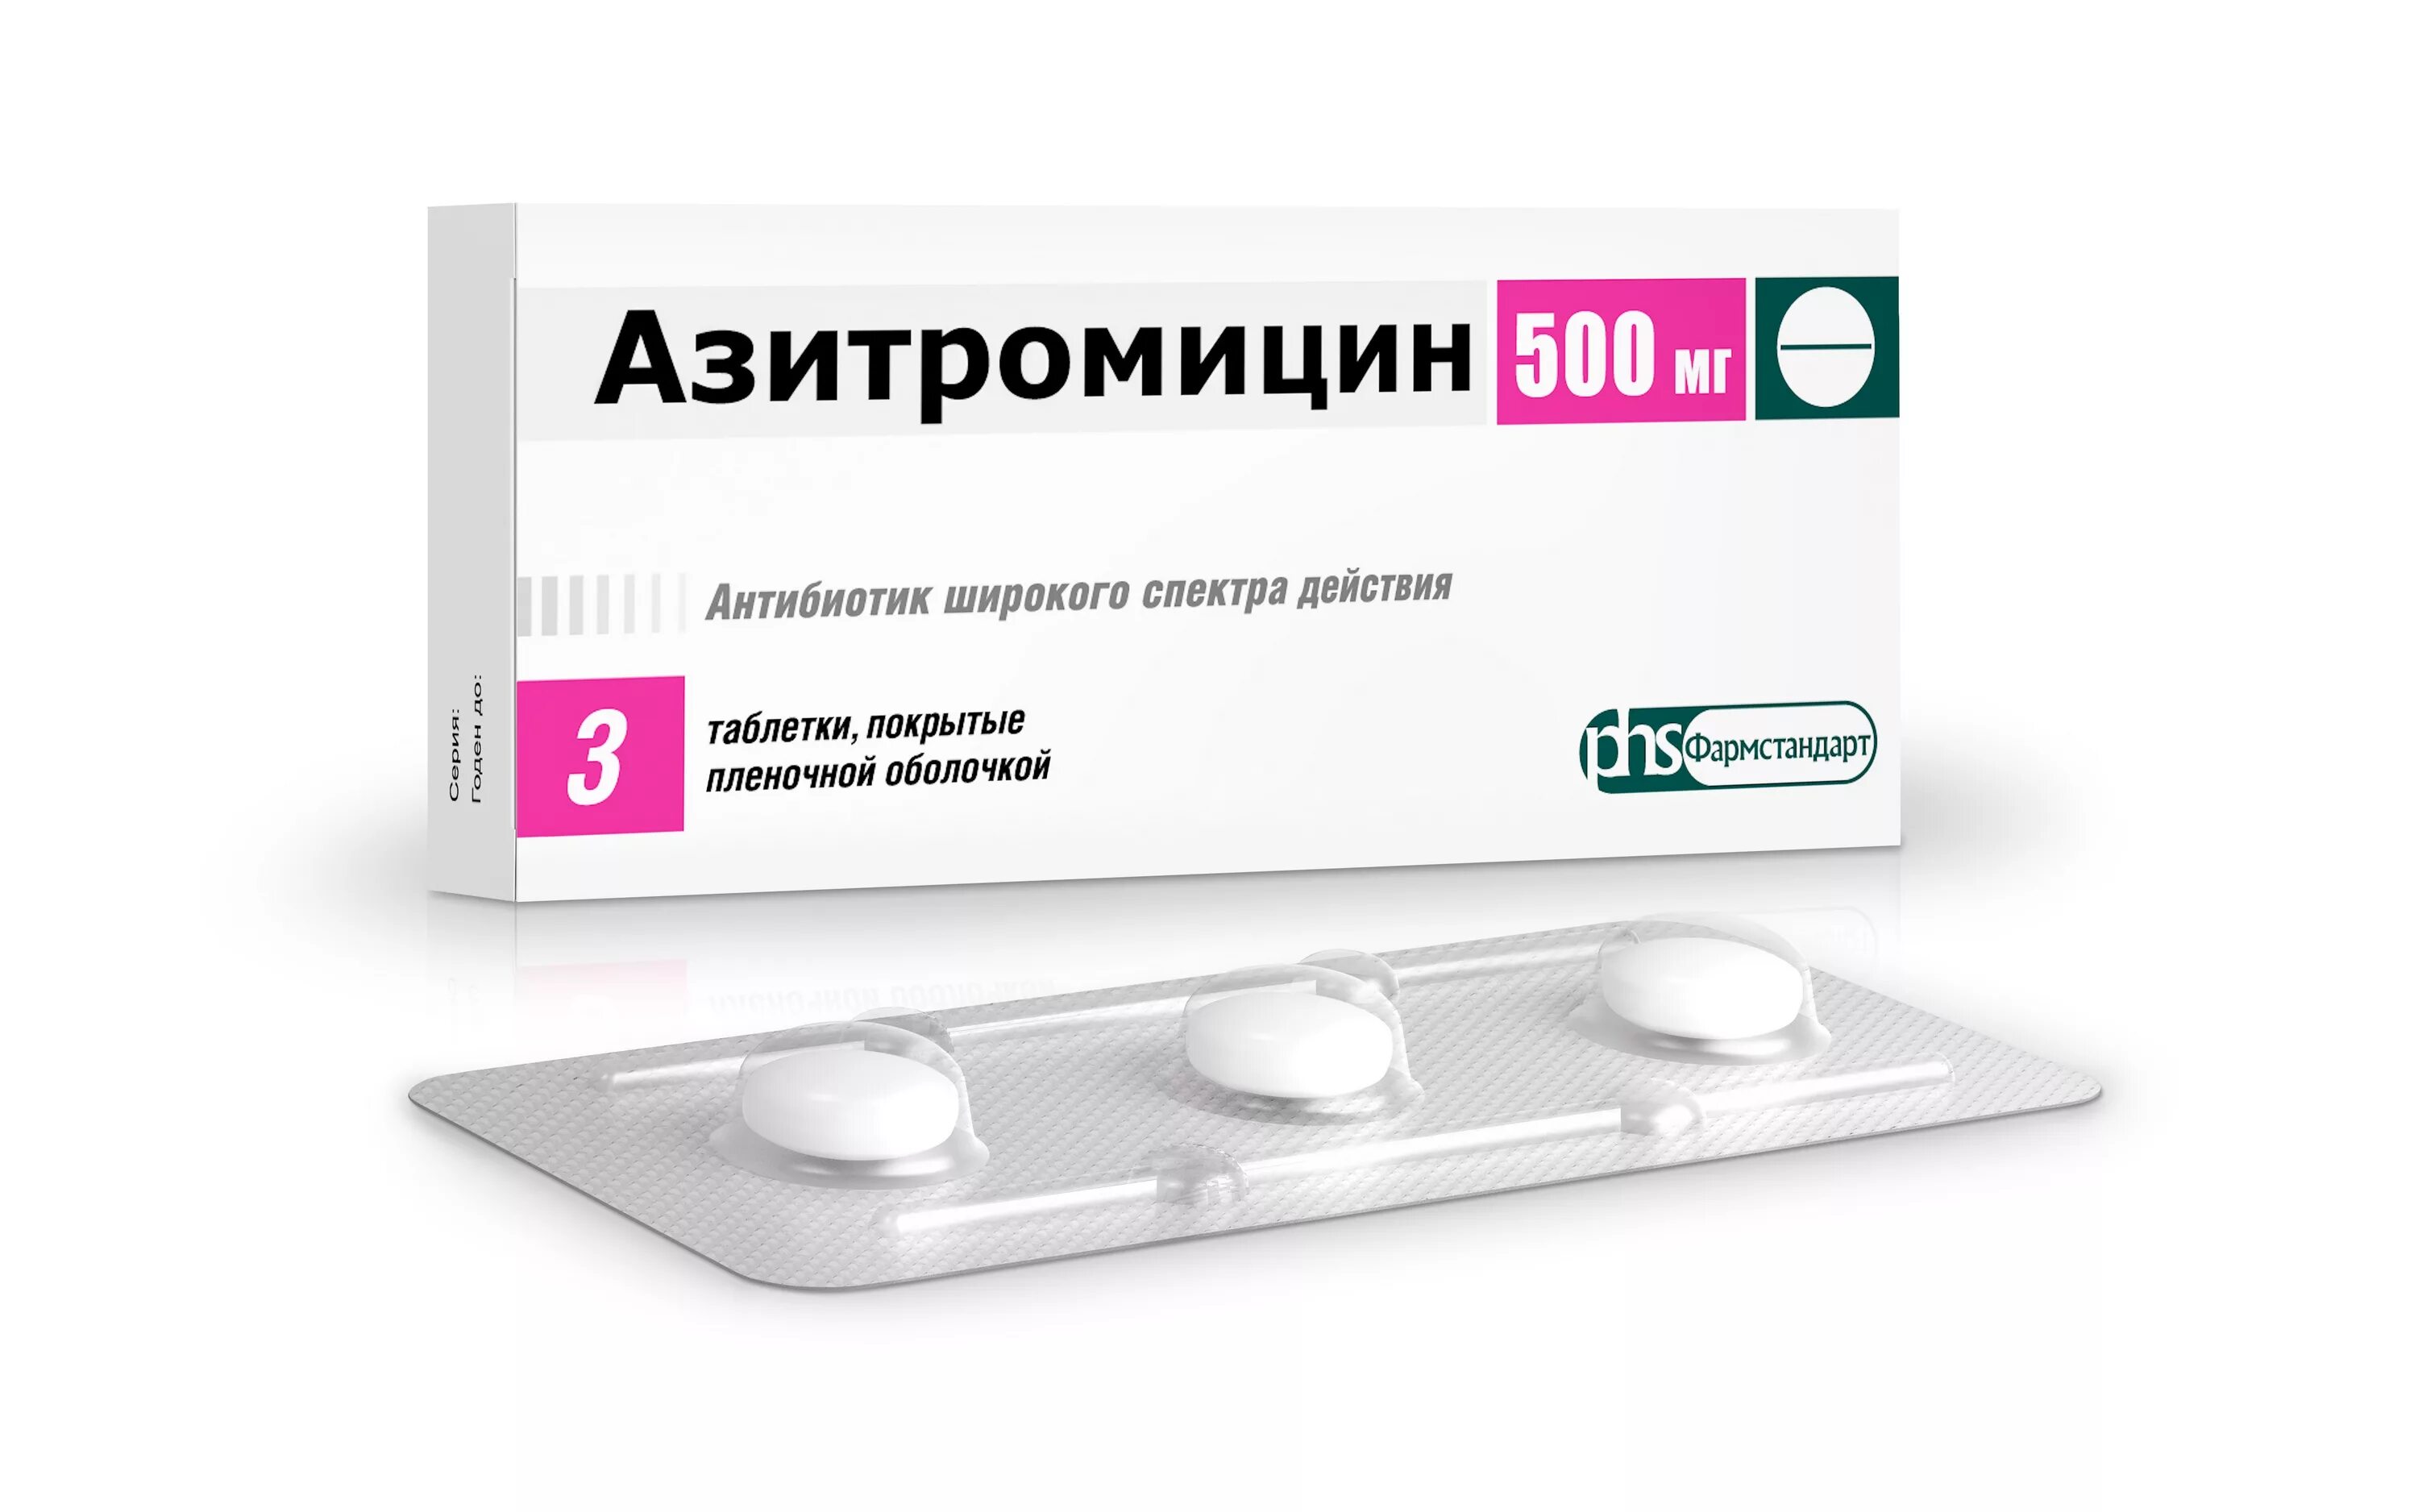 Азитромицин 500 мг. Азитромицин таблетки 500 мг. Азитромицин 500 мг 3. Азитромицин 500 Фармстандарт. Широкого спектра действия для эффективного